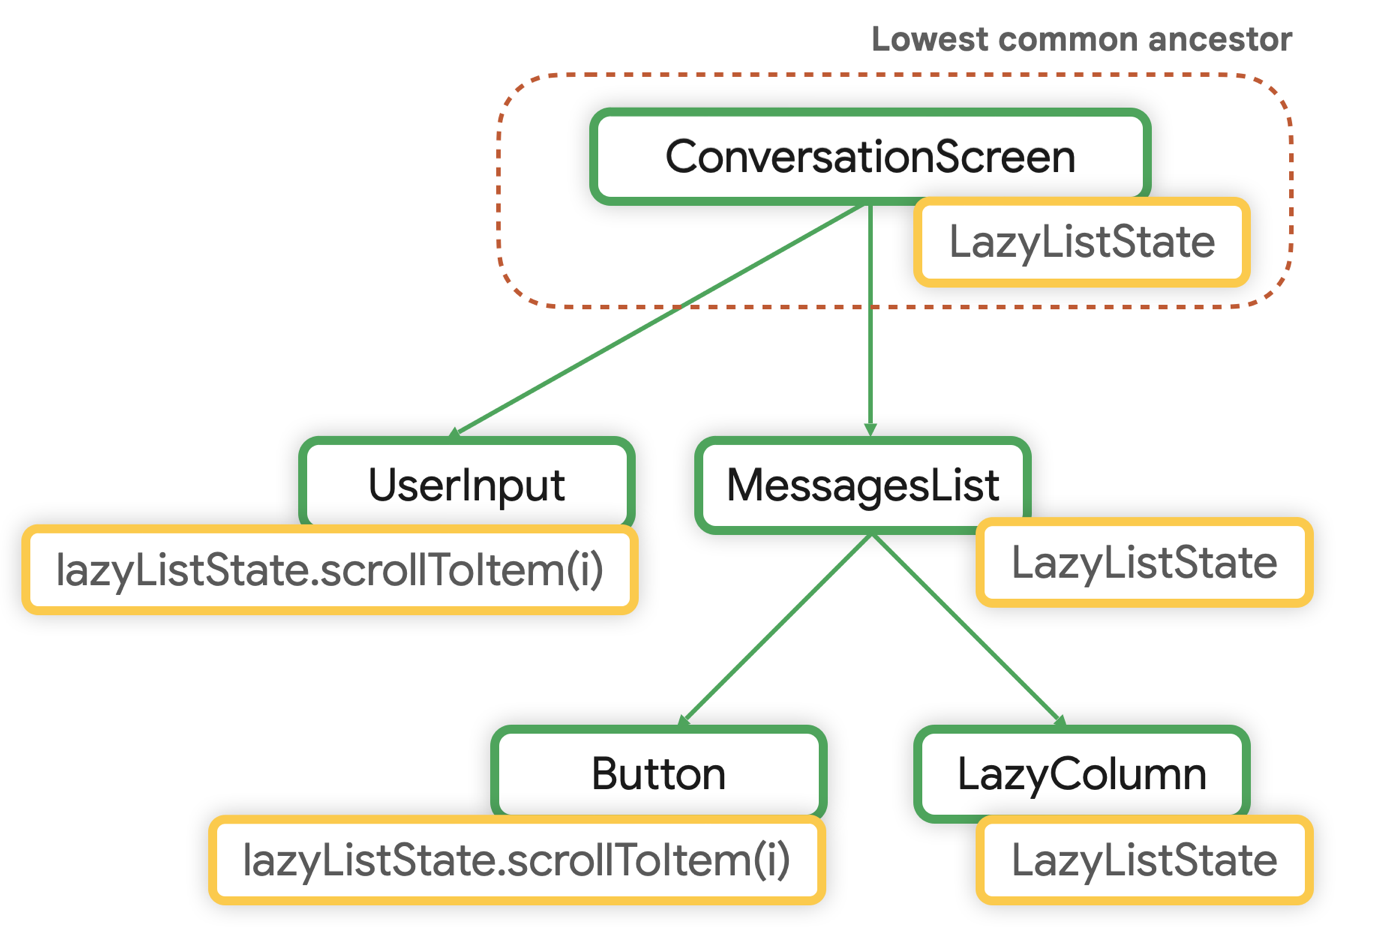 O menor ancestral comum de LazyListState é ConversationScreen.